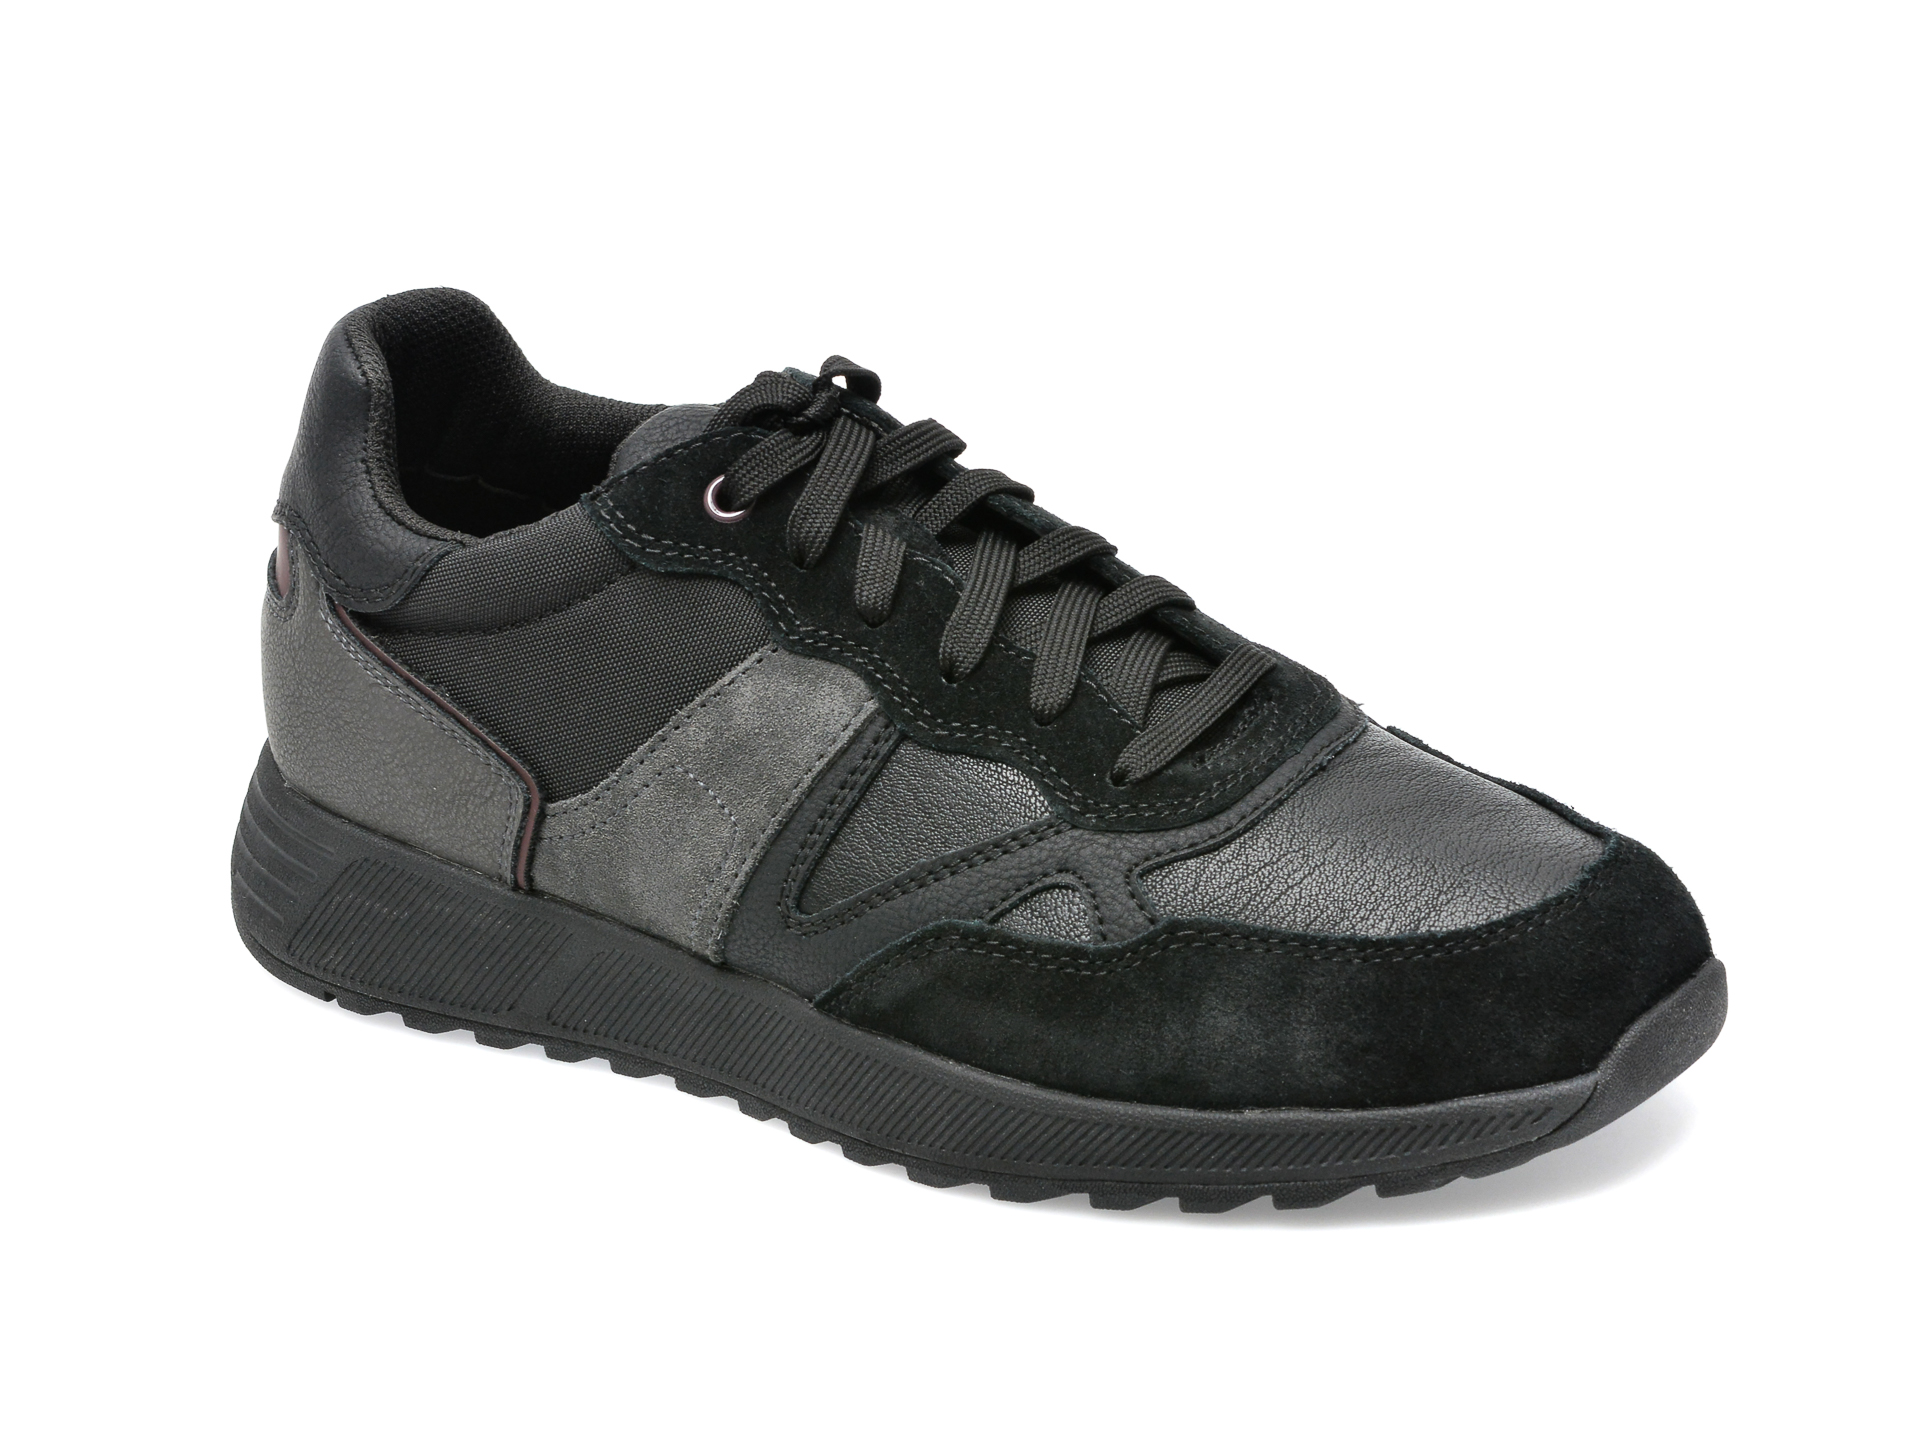 Pantofi sport GEOX negri, U26F1A, din piele naturala barbati 2023-03-21